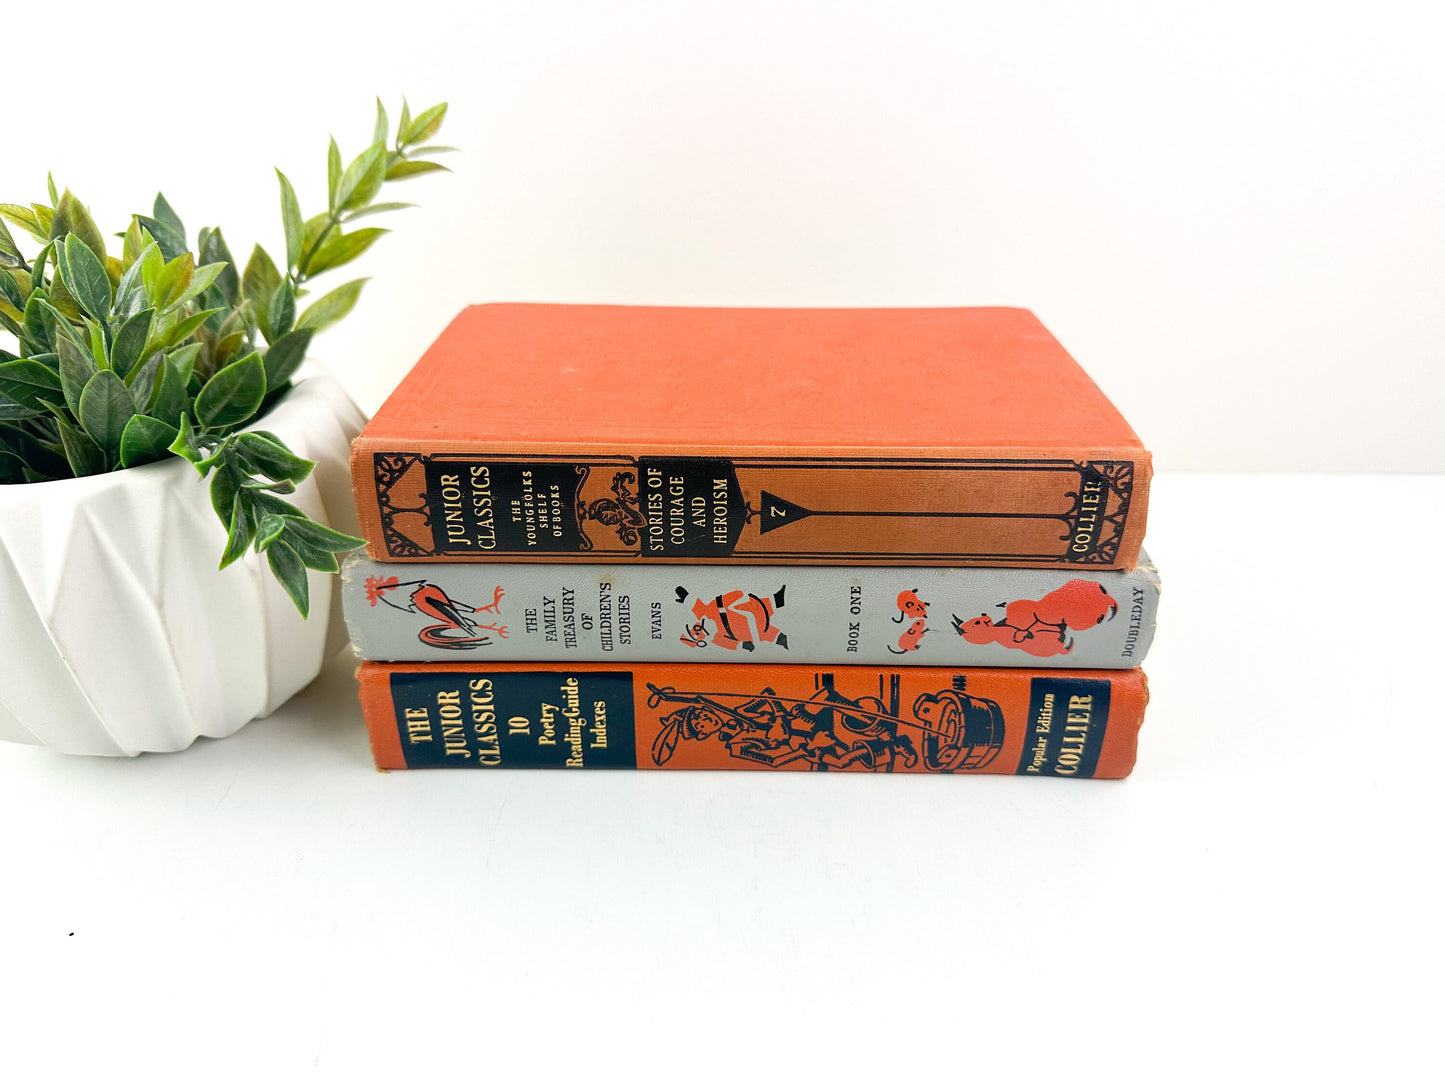 Book Set, Decorative Books for Shelf Decor, Modern Decor, Living Room Decor Ideas